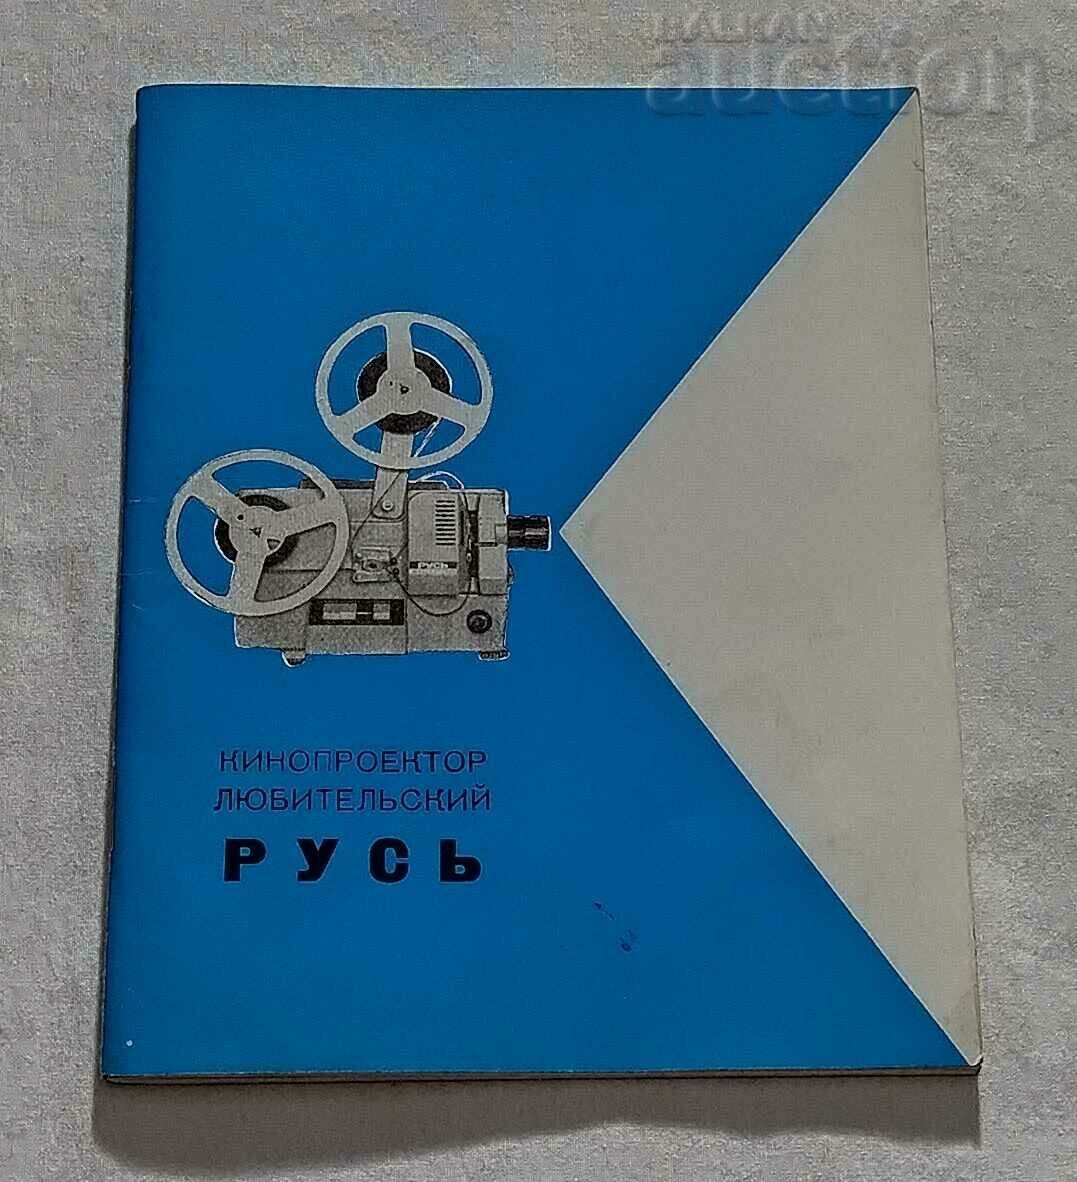 AMATEUR "RUS" CINEMA PROJECTOR DESCRIPTION INSTRUCTIONS 1975